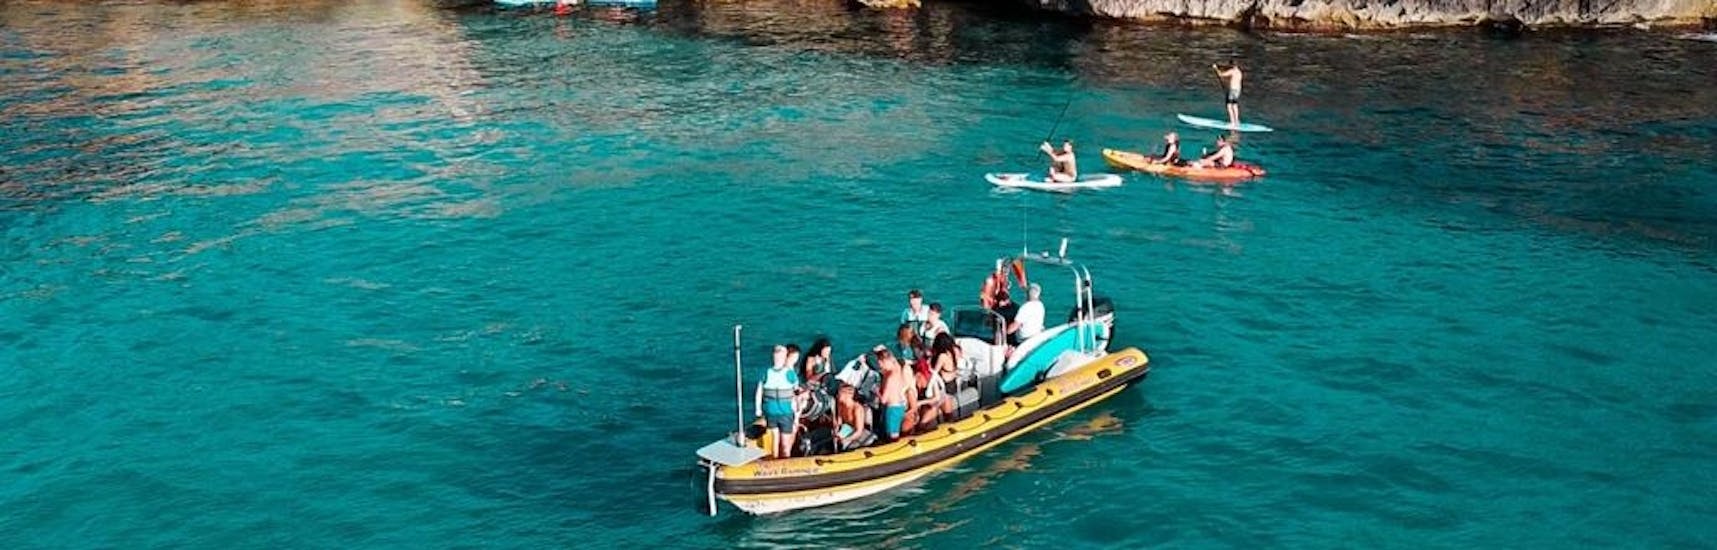 Teilnehmer auf einem Schnellboot mit Badestopp im türkisfarbenen Wasser der Bucht von Alcudia während einer Bootstour von Can Picafort zum Naturpark Llevant mit North Coast Adventure Mallorca.